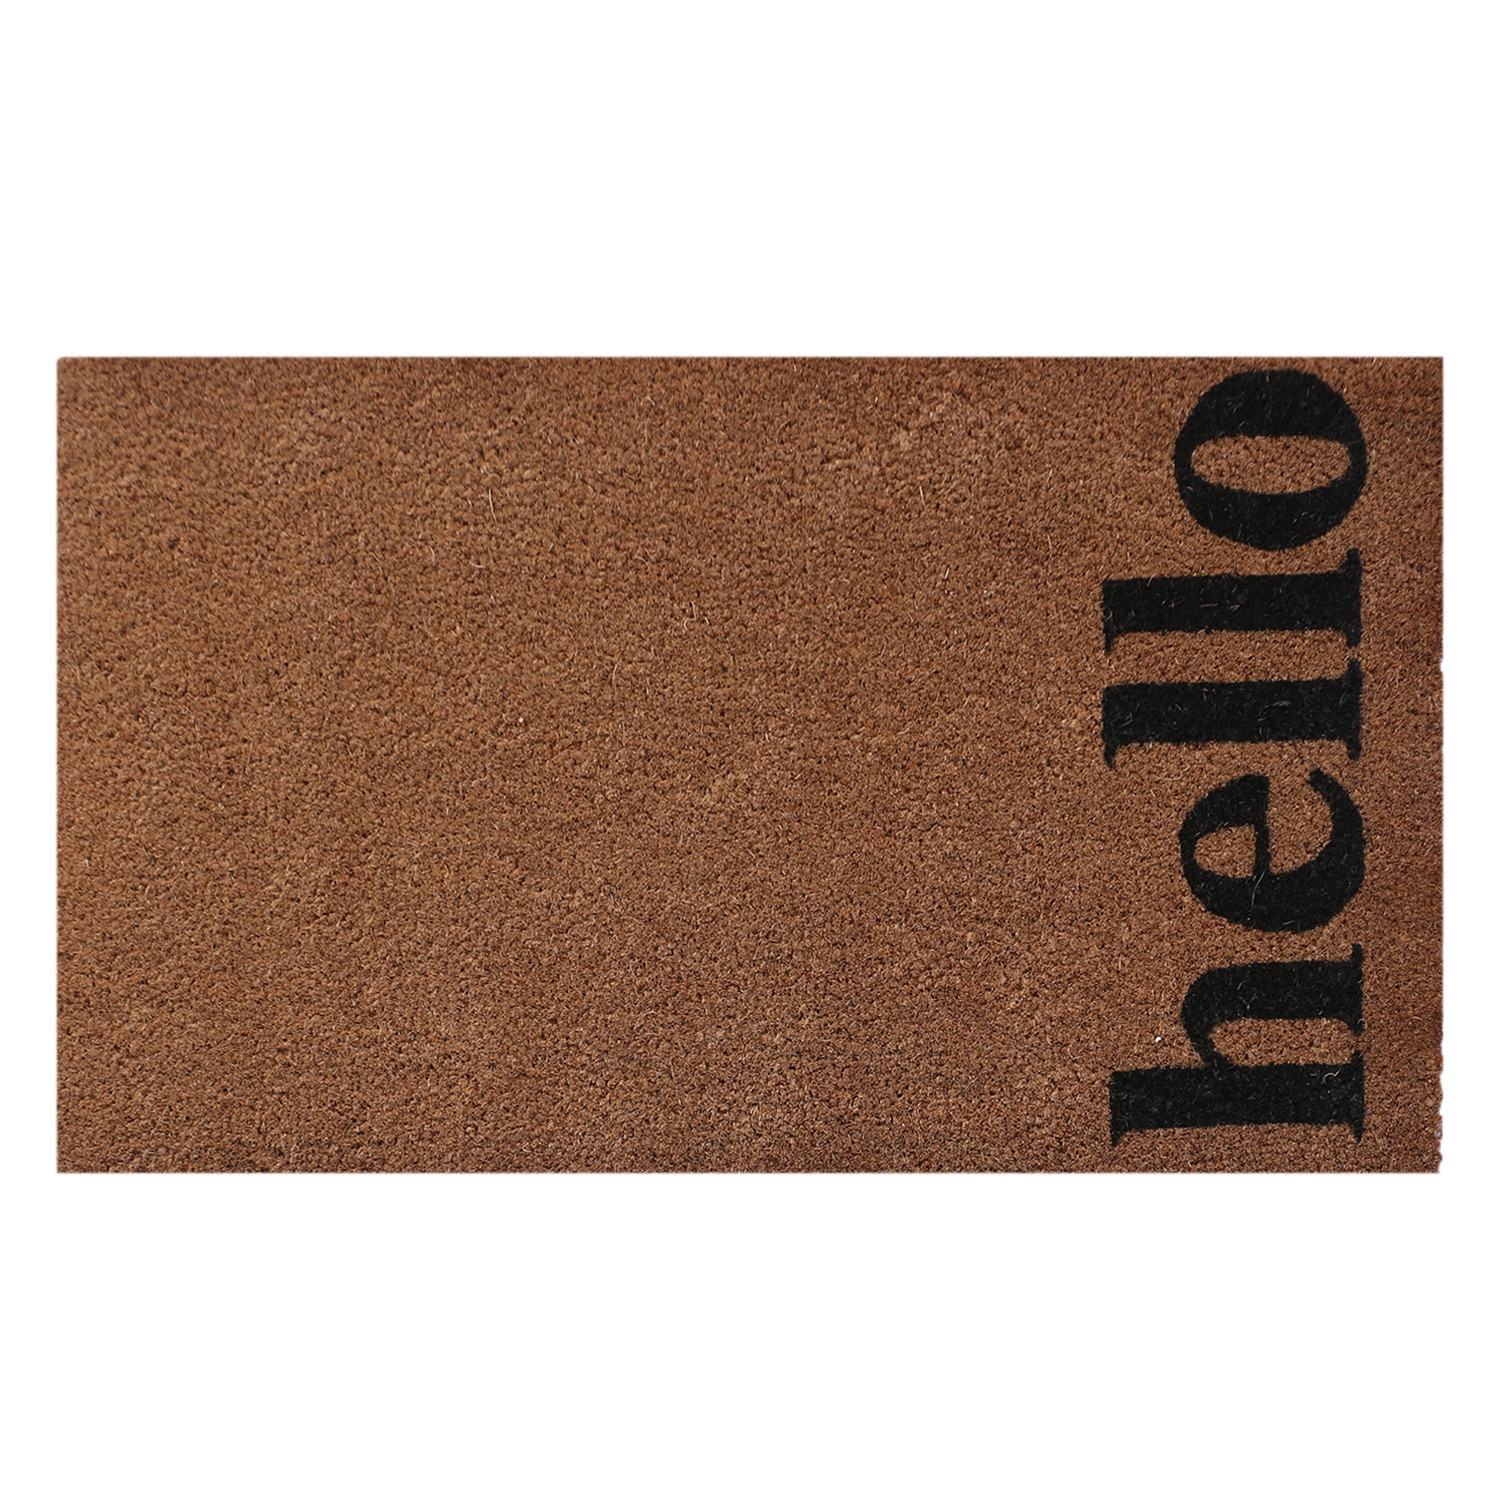 Kuber Industries Door Mat|Polyethylene Durable & Anti-Slip Natural Hello Print Floor Mat|Rug For Indoor or Outdoor, 30x20 Inch (Brown)